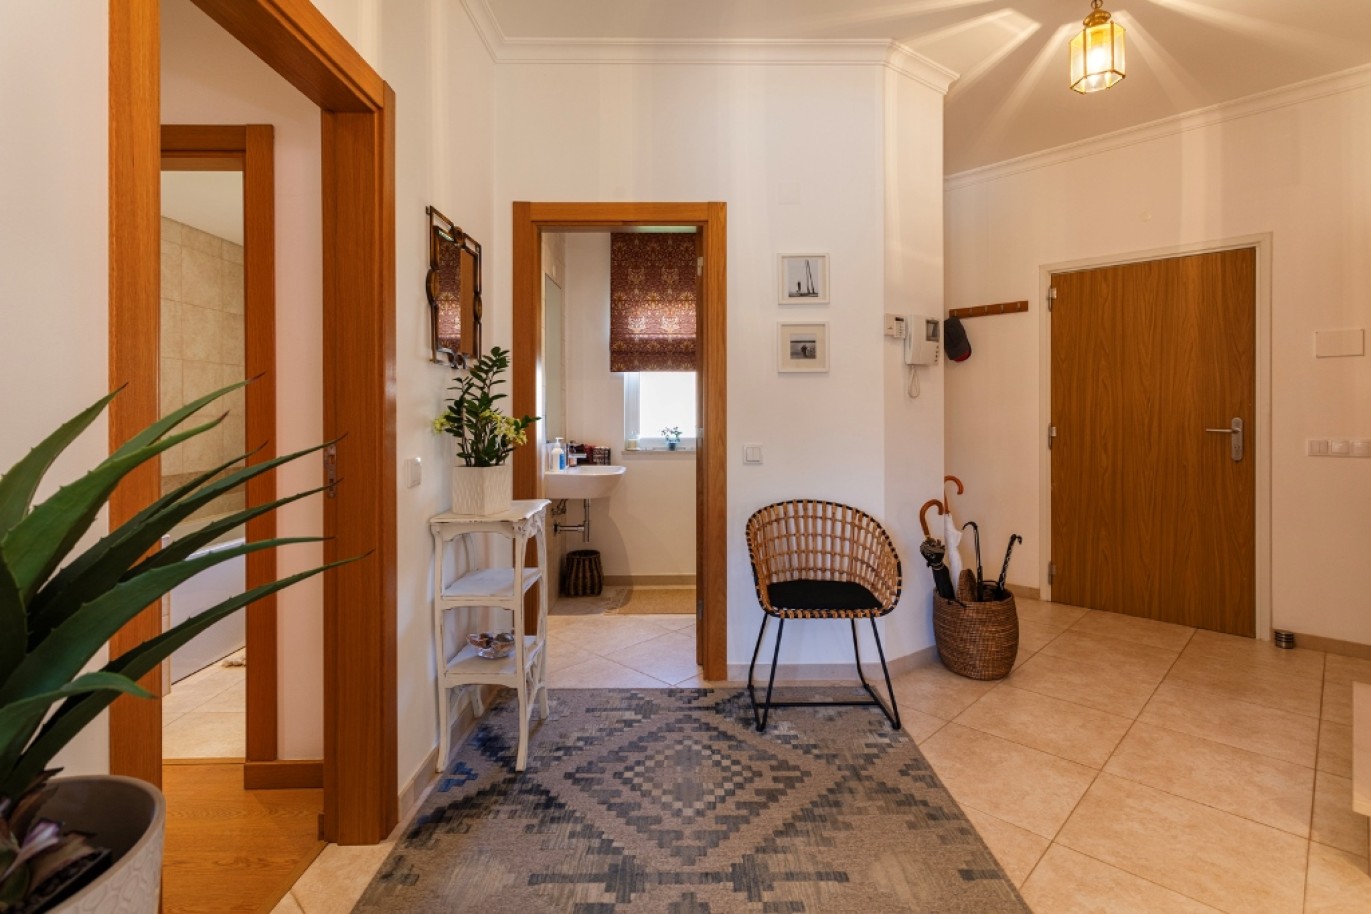 Fantástica moradia isolada 3 quartos, para venda em Vilamoura, Algarve_253979